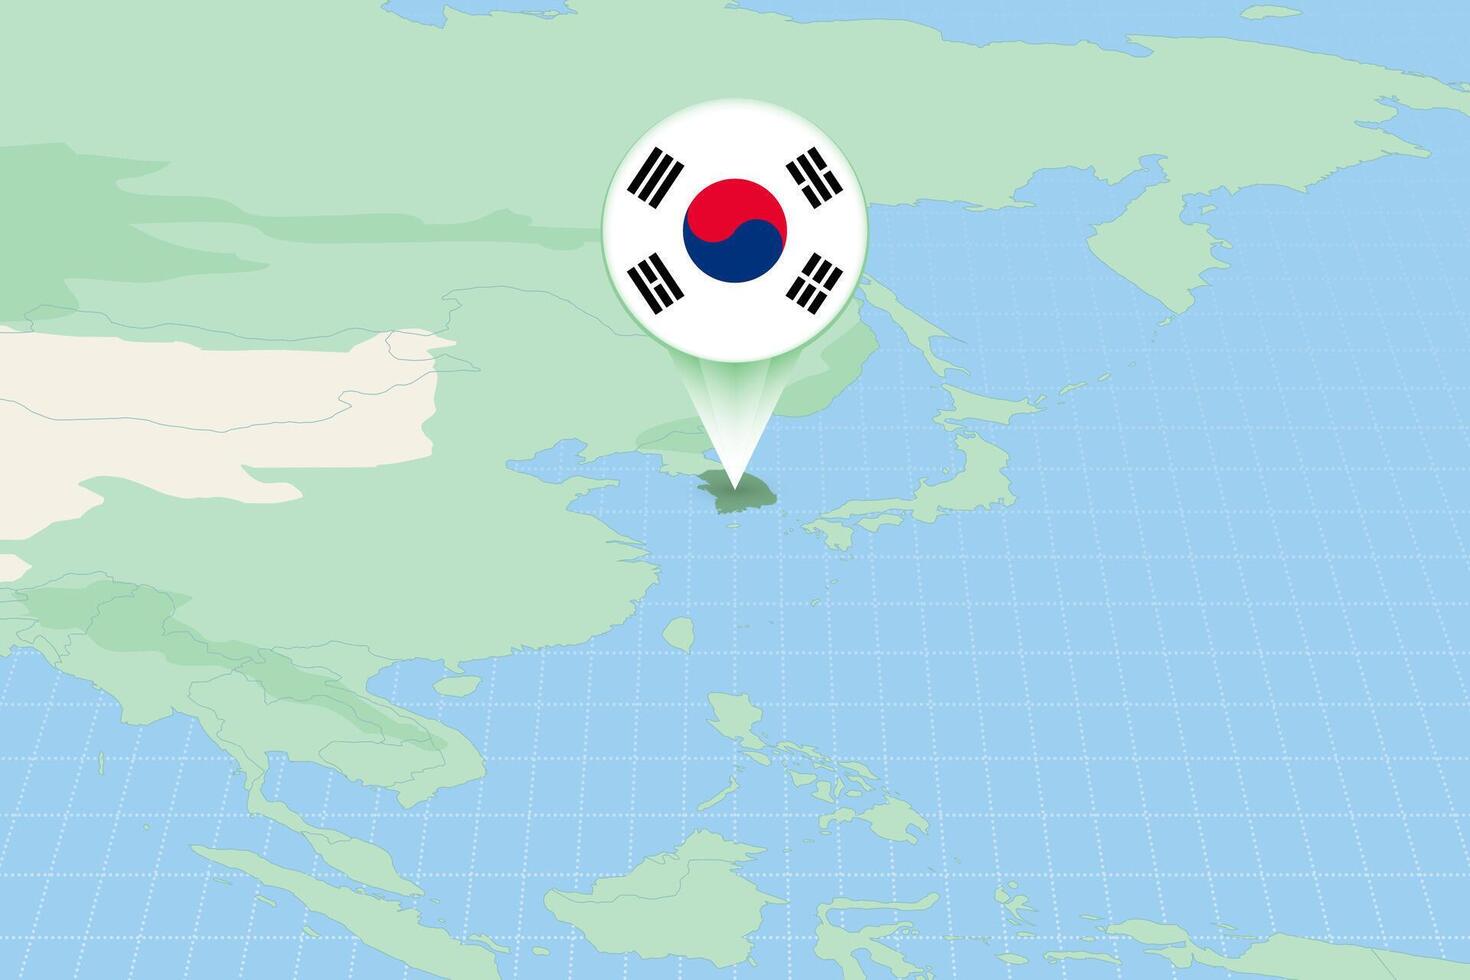 mapa ilustração do sul Coréia com a bandeira. cartográfico ilustração do sul Coréia e vizinho países. vetor